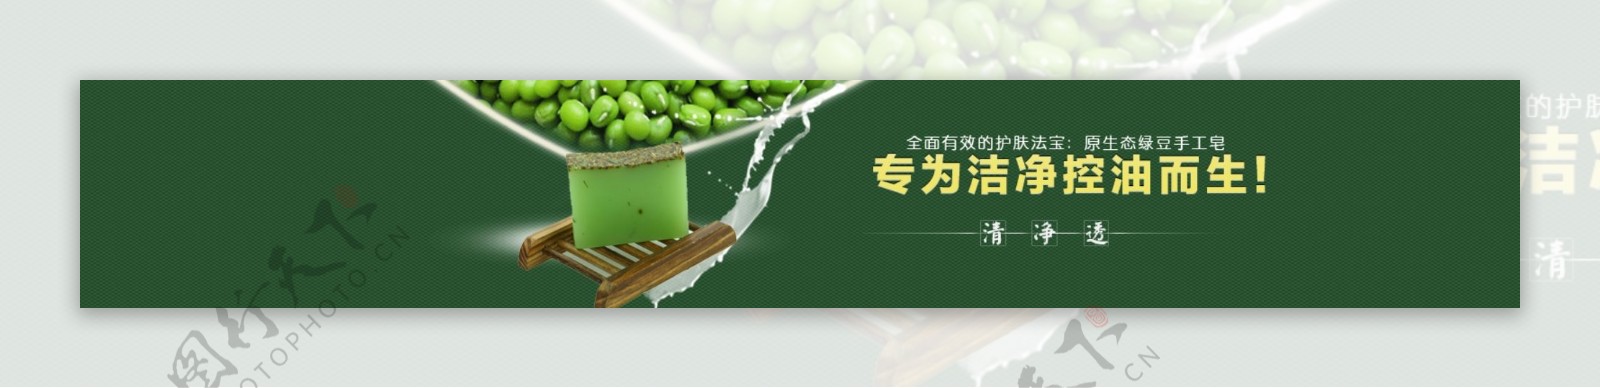 绿豆纯天然手工皂绿色海报